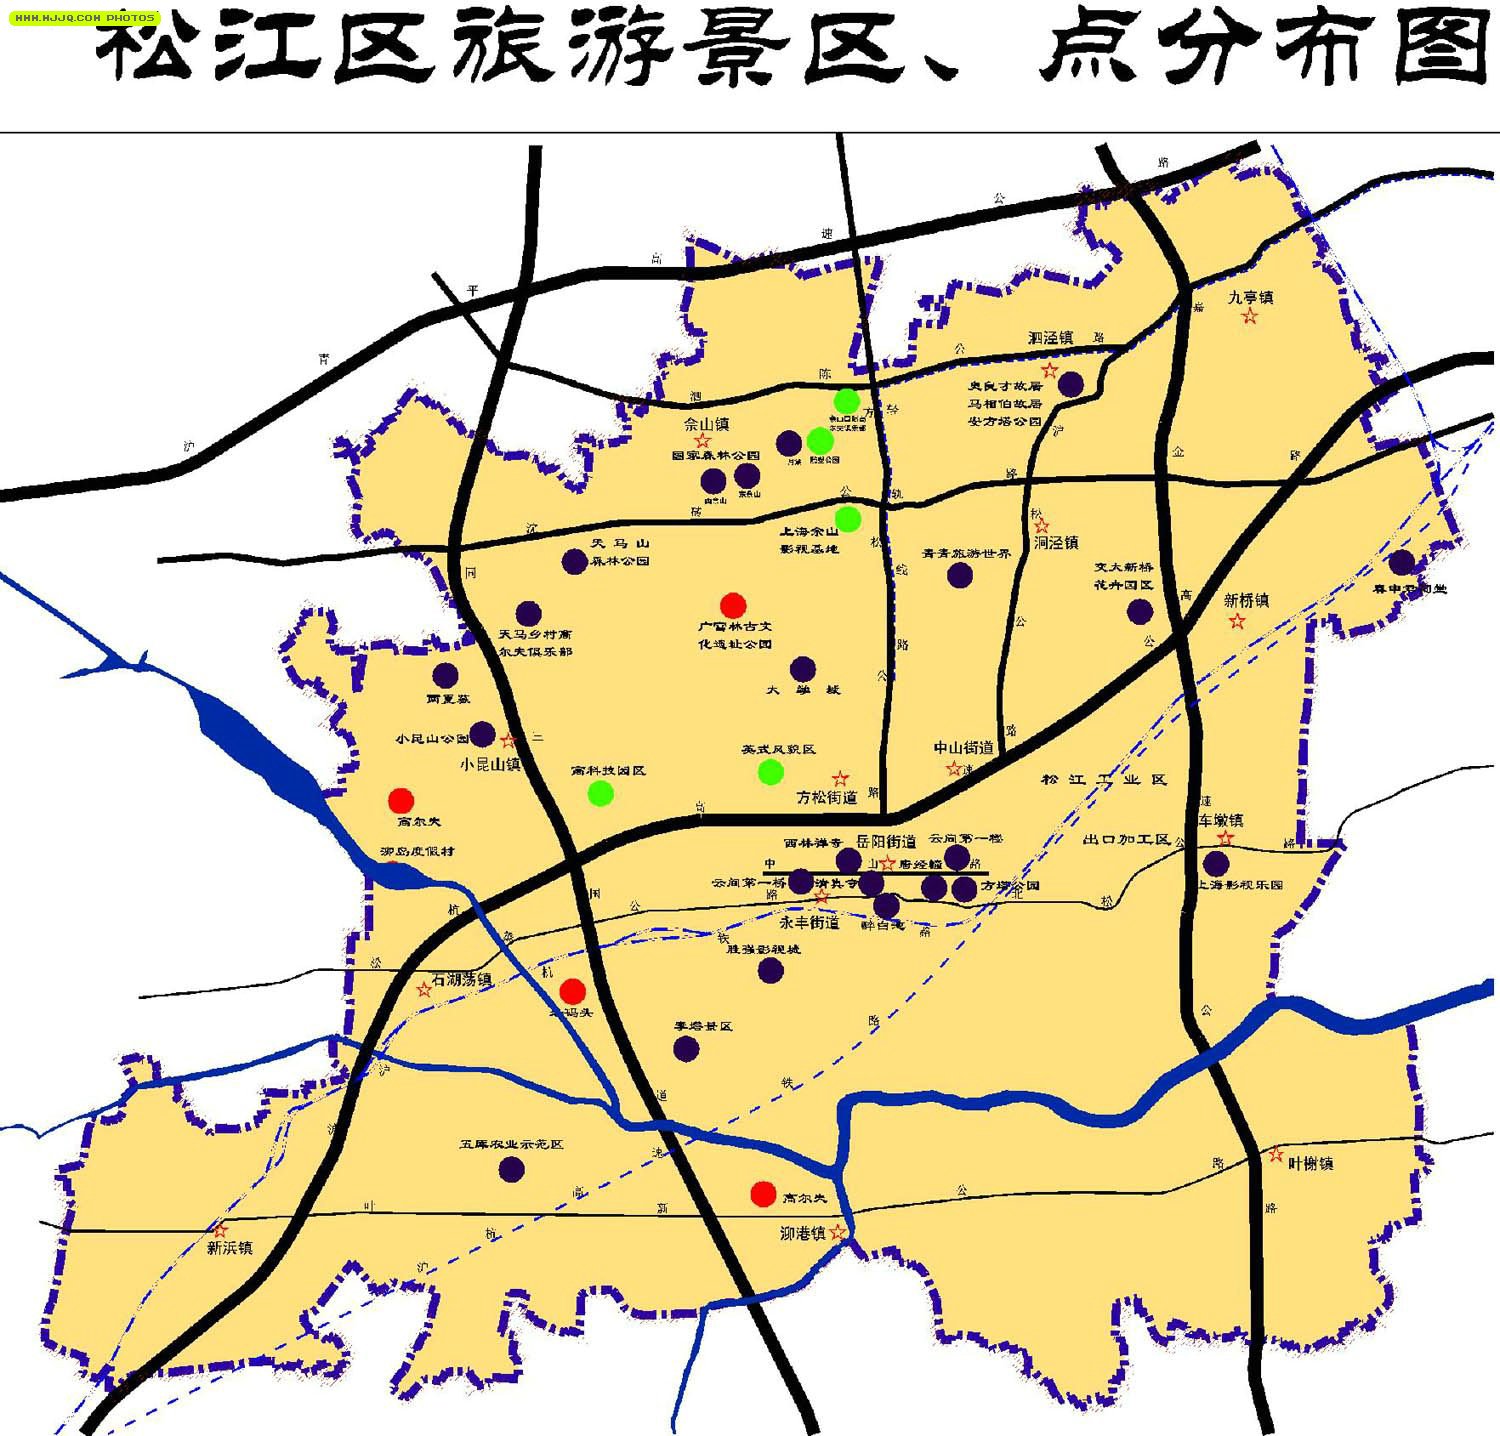 松江区景点分布图